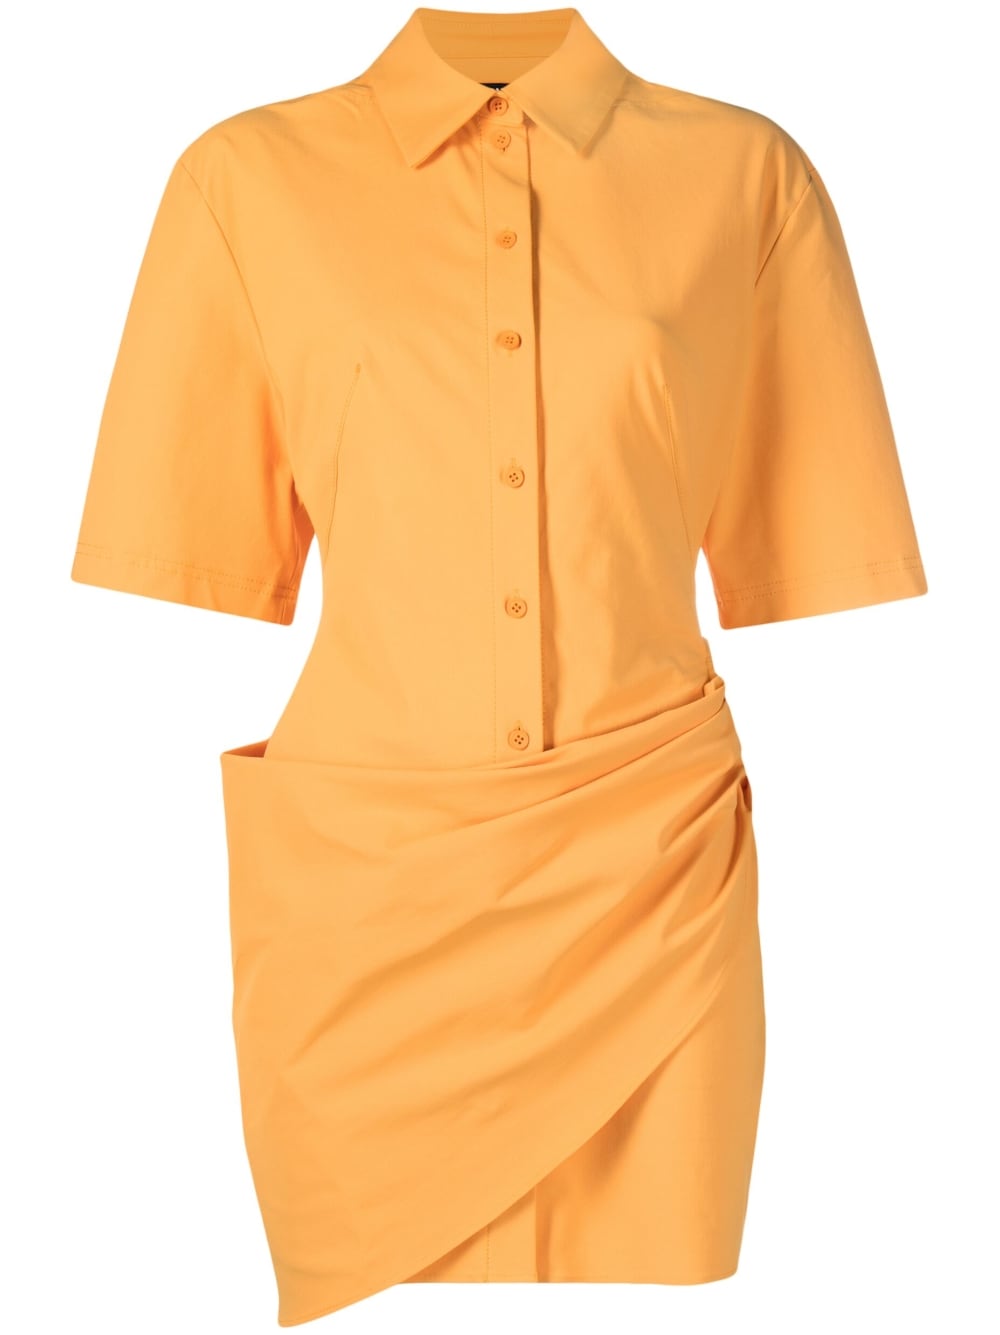 Jacquemus La robe Camisa shirt dress - Orange